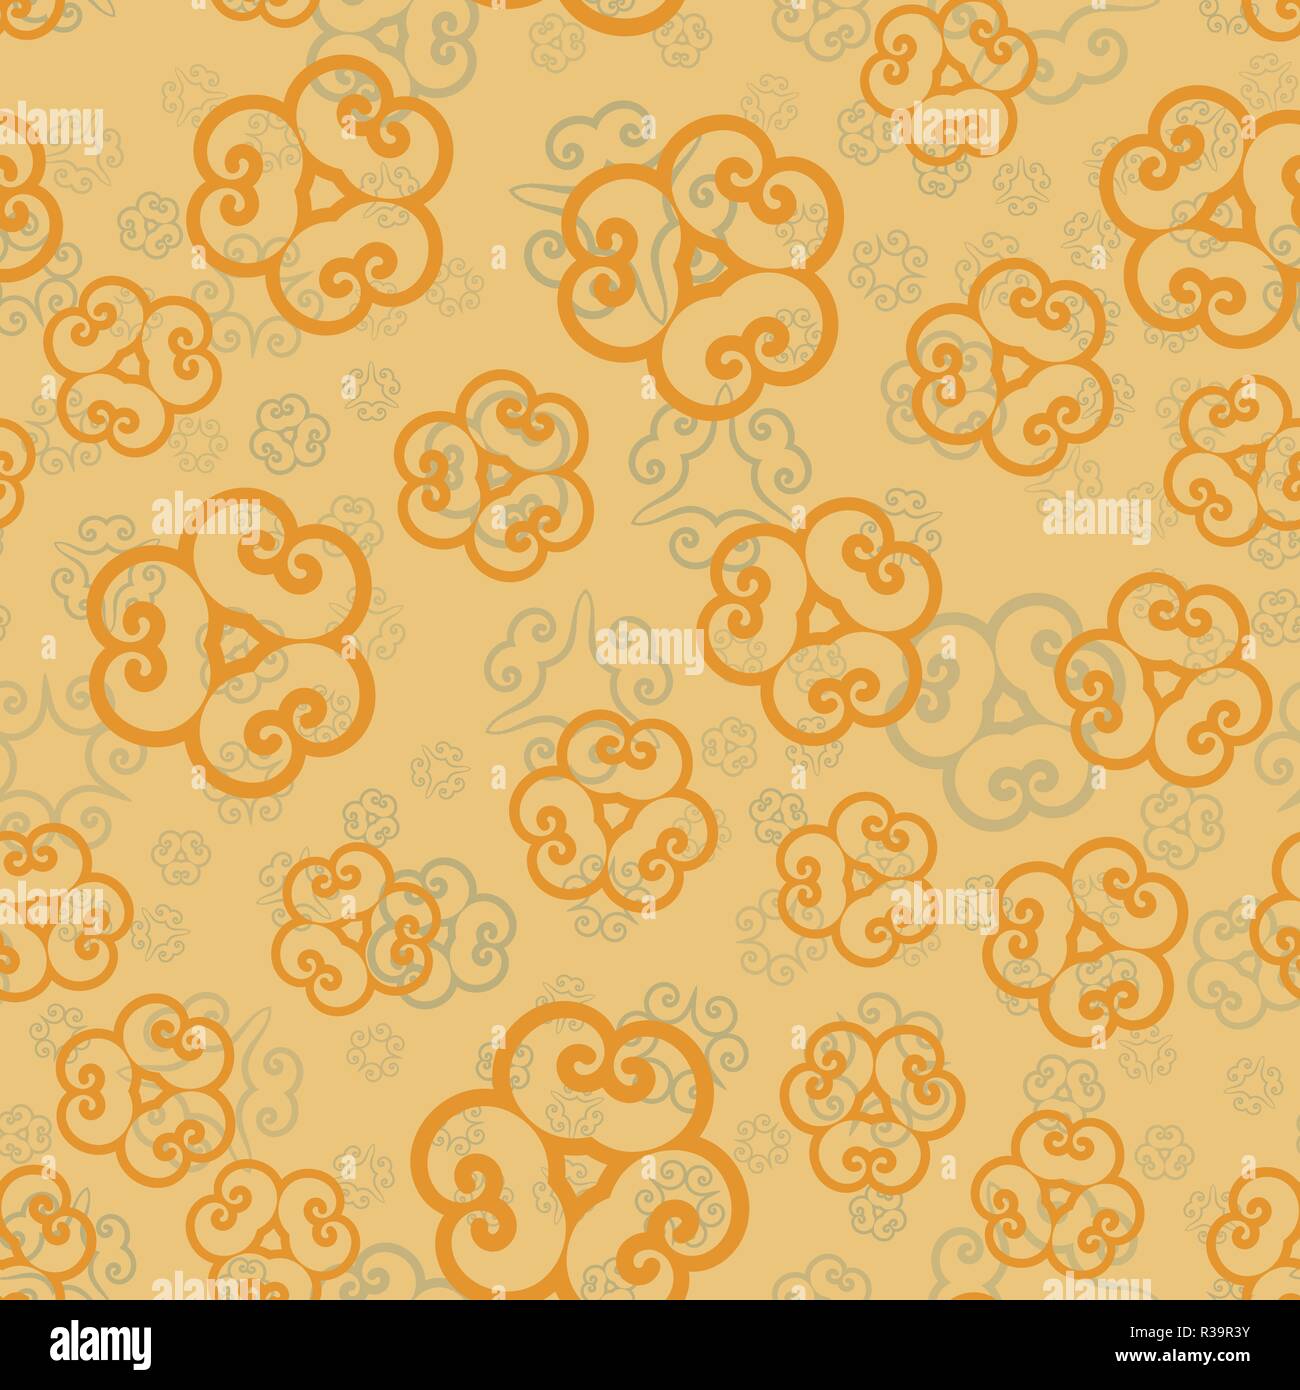 Ethnische floral nahtlose Muster in Henna Farbe. Abstrakte zier Kulisse für Textil- oder Geschenkpapier Stock Vektor